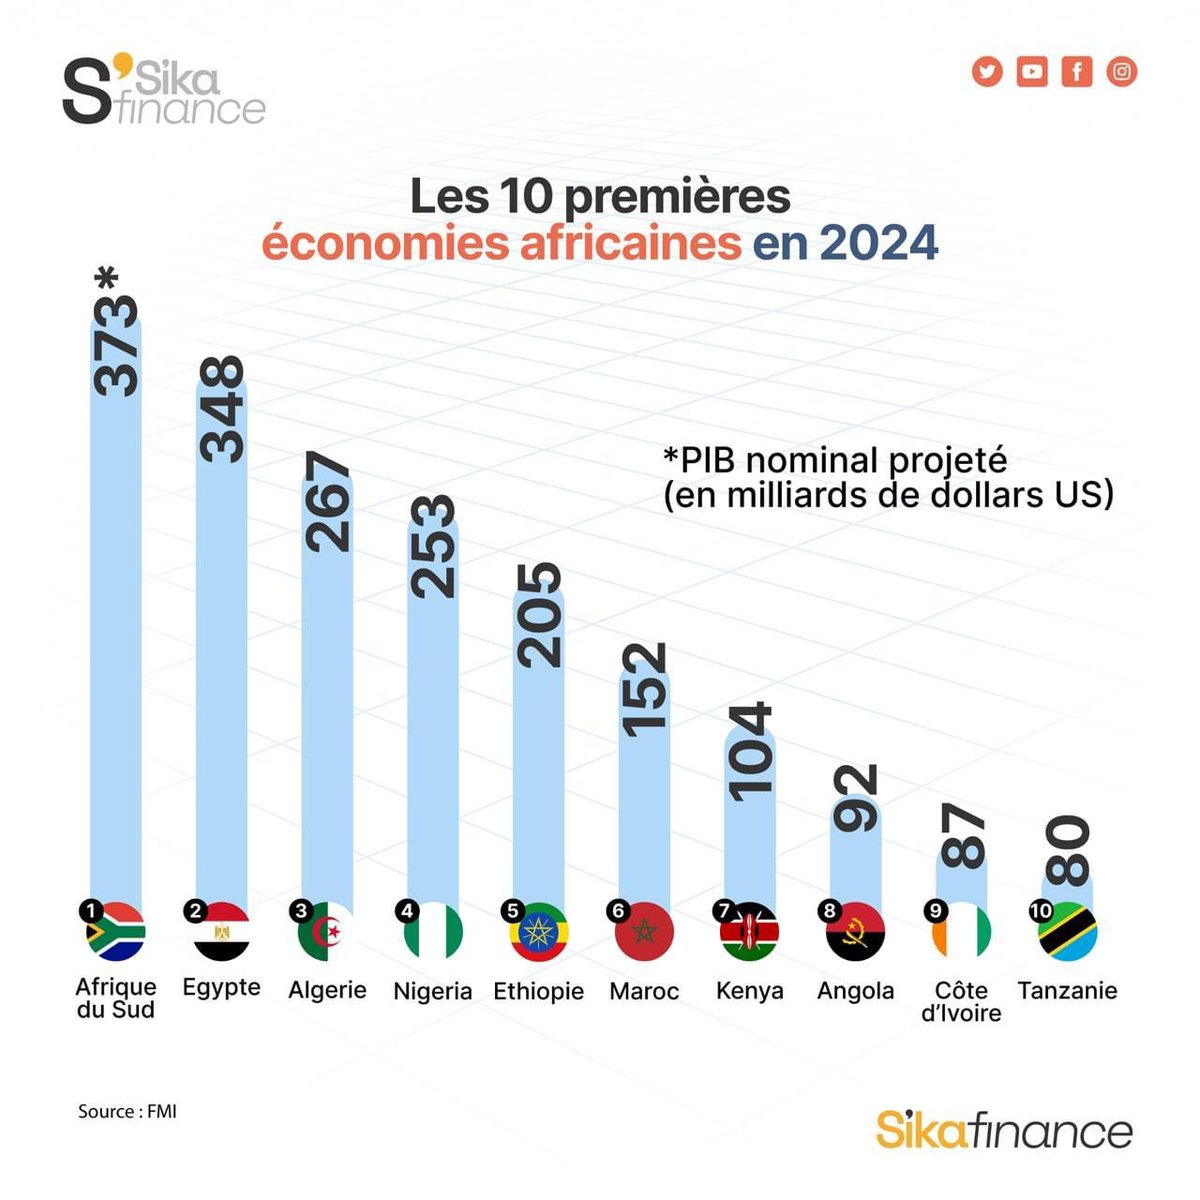 La Côte d’Ivoire dans le top 10 des premières économies africaines en 2024